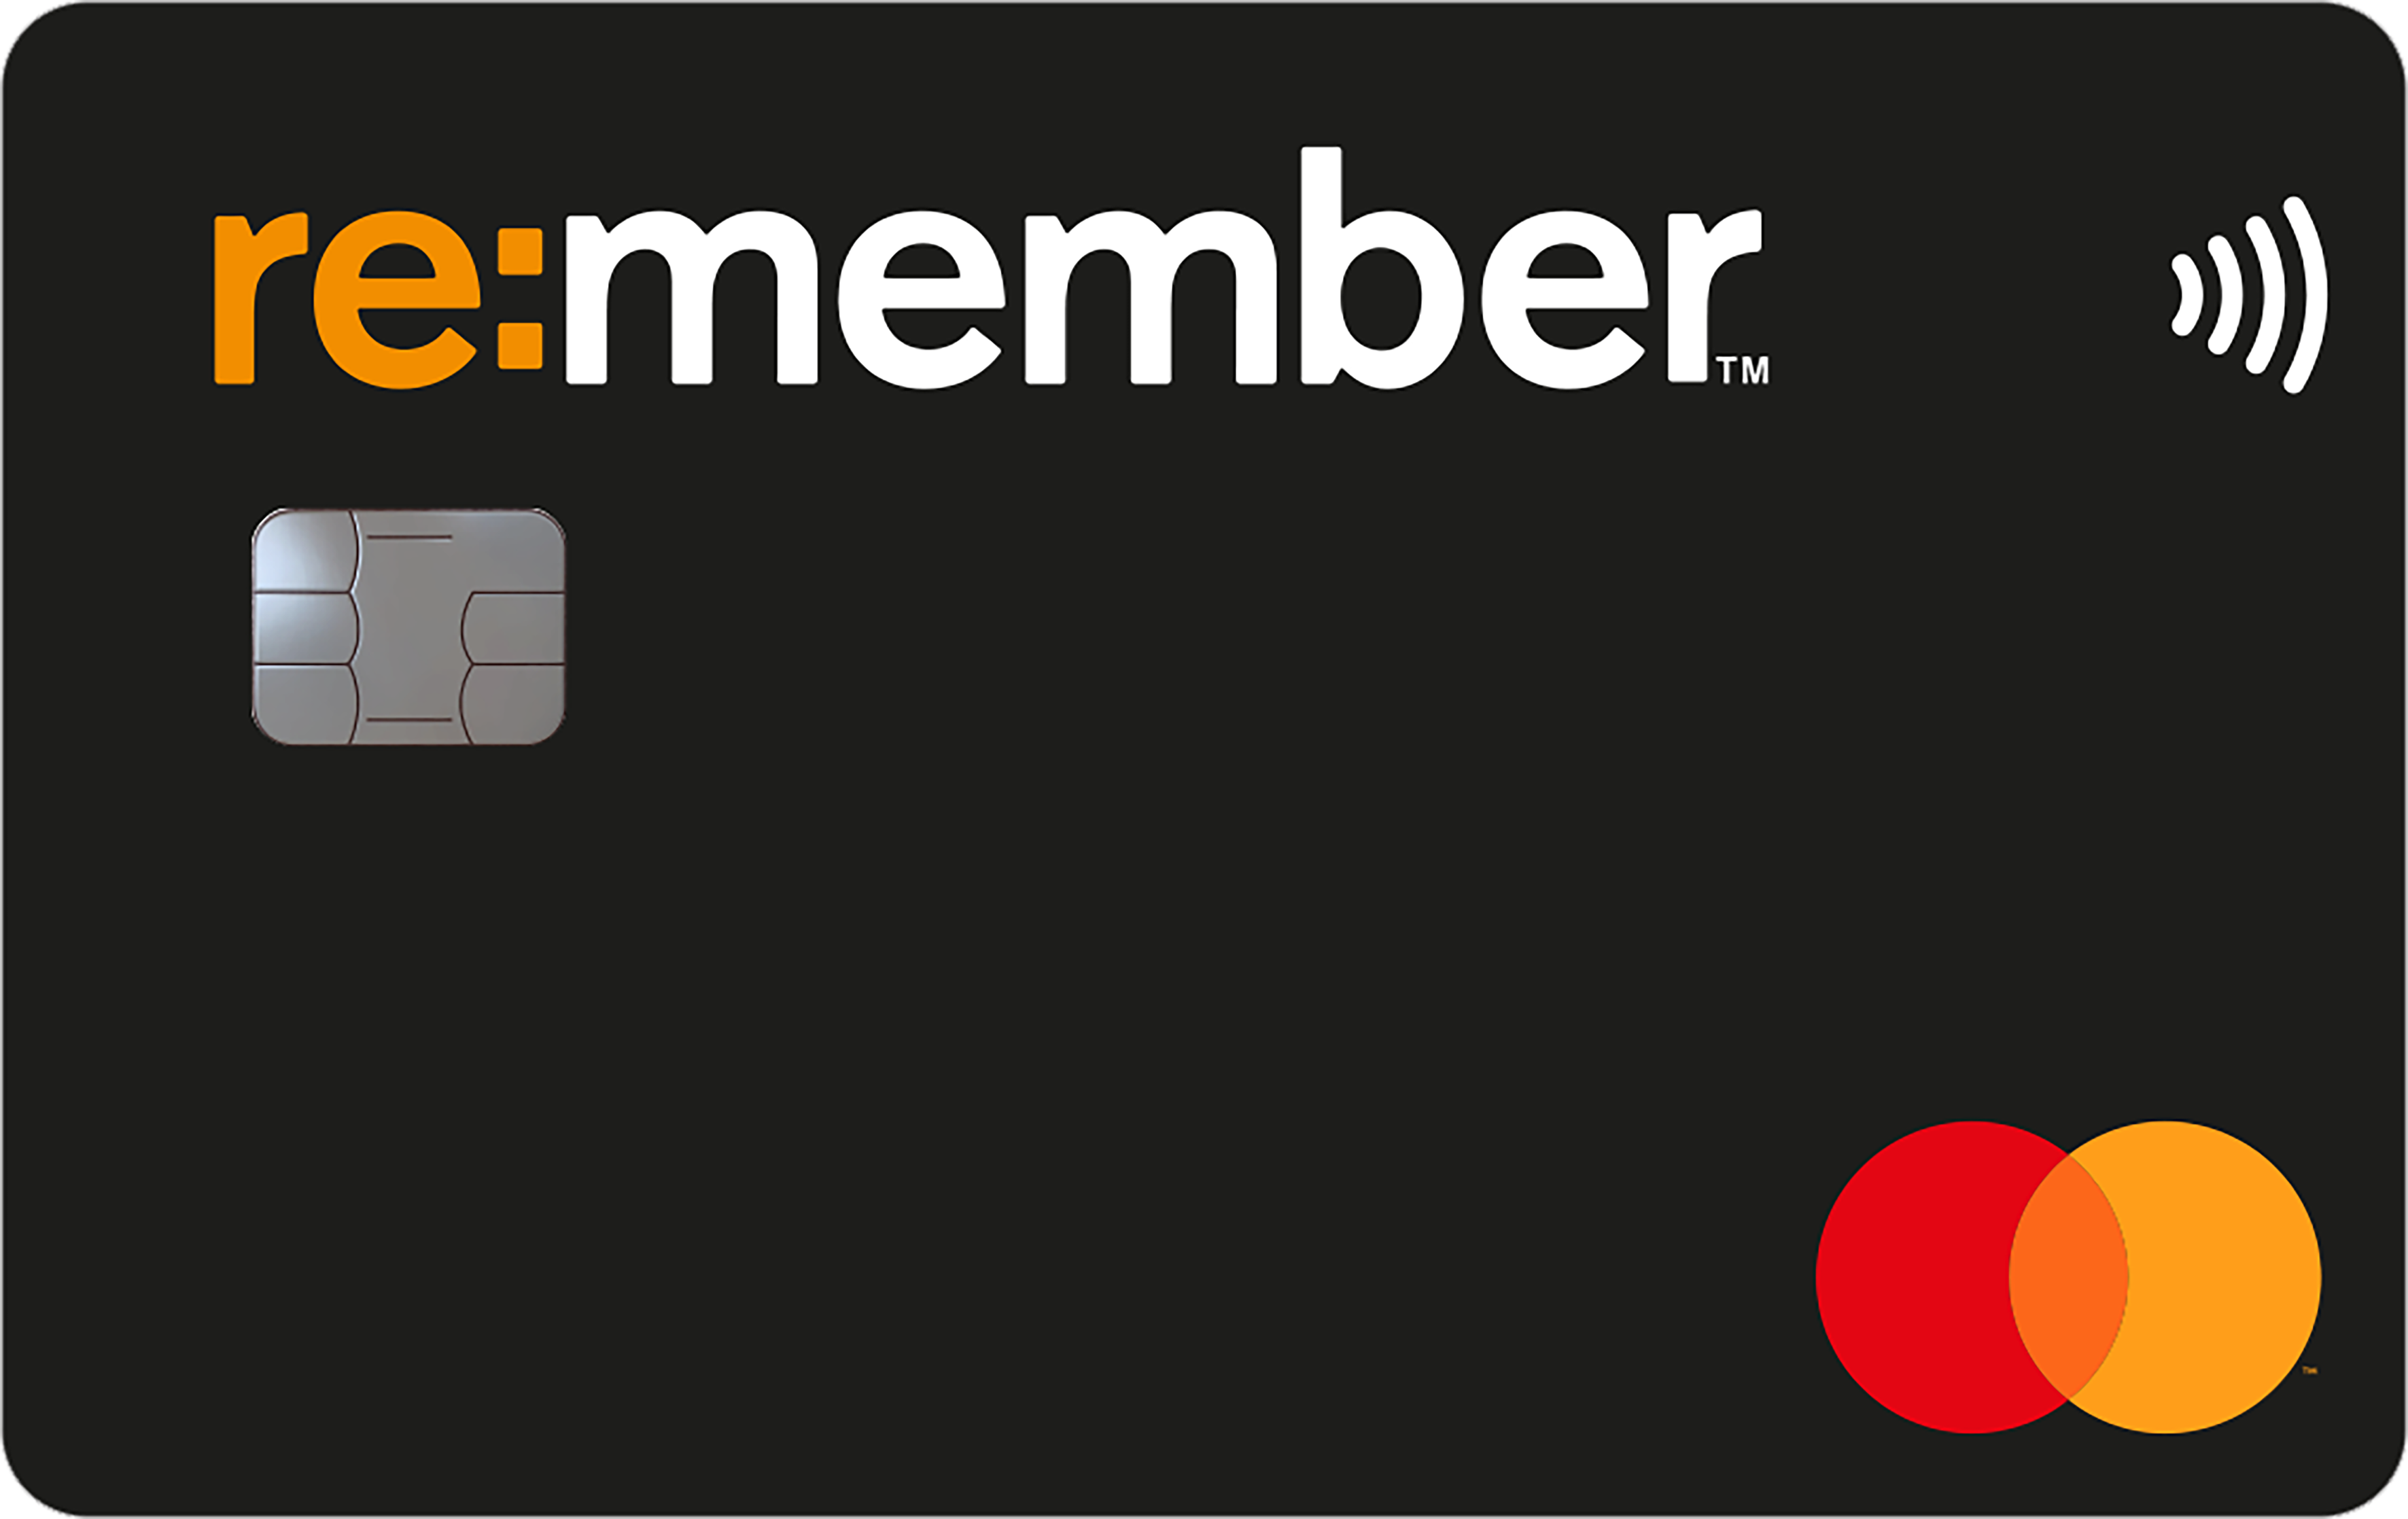 Re:member - najlepsza karta kredytowa w Norwegii | localmarket.no